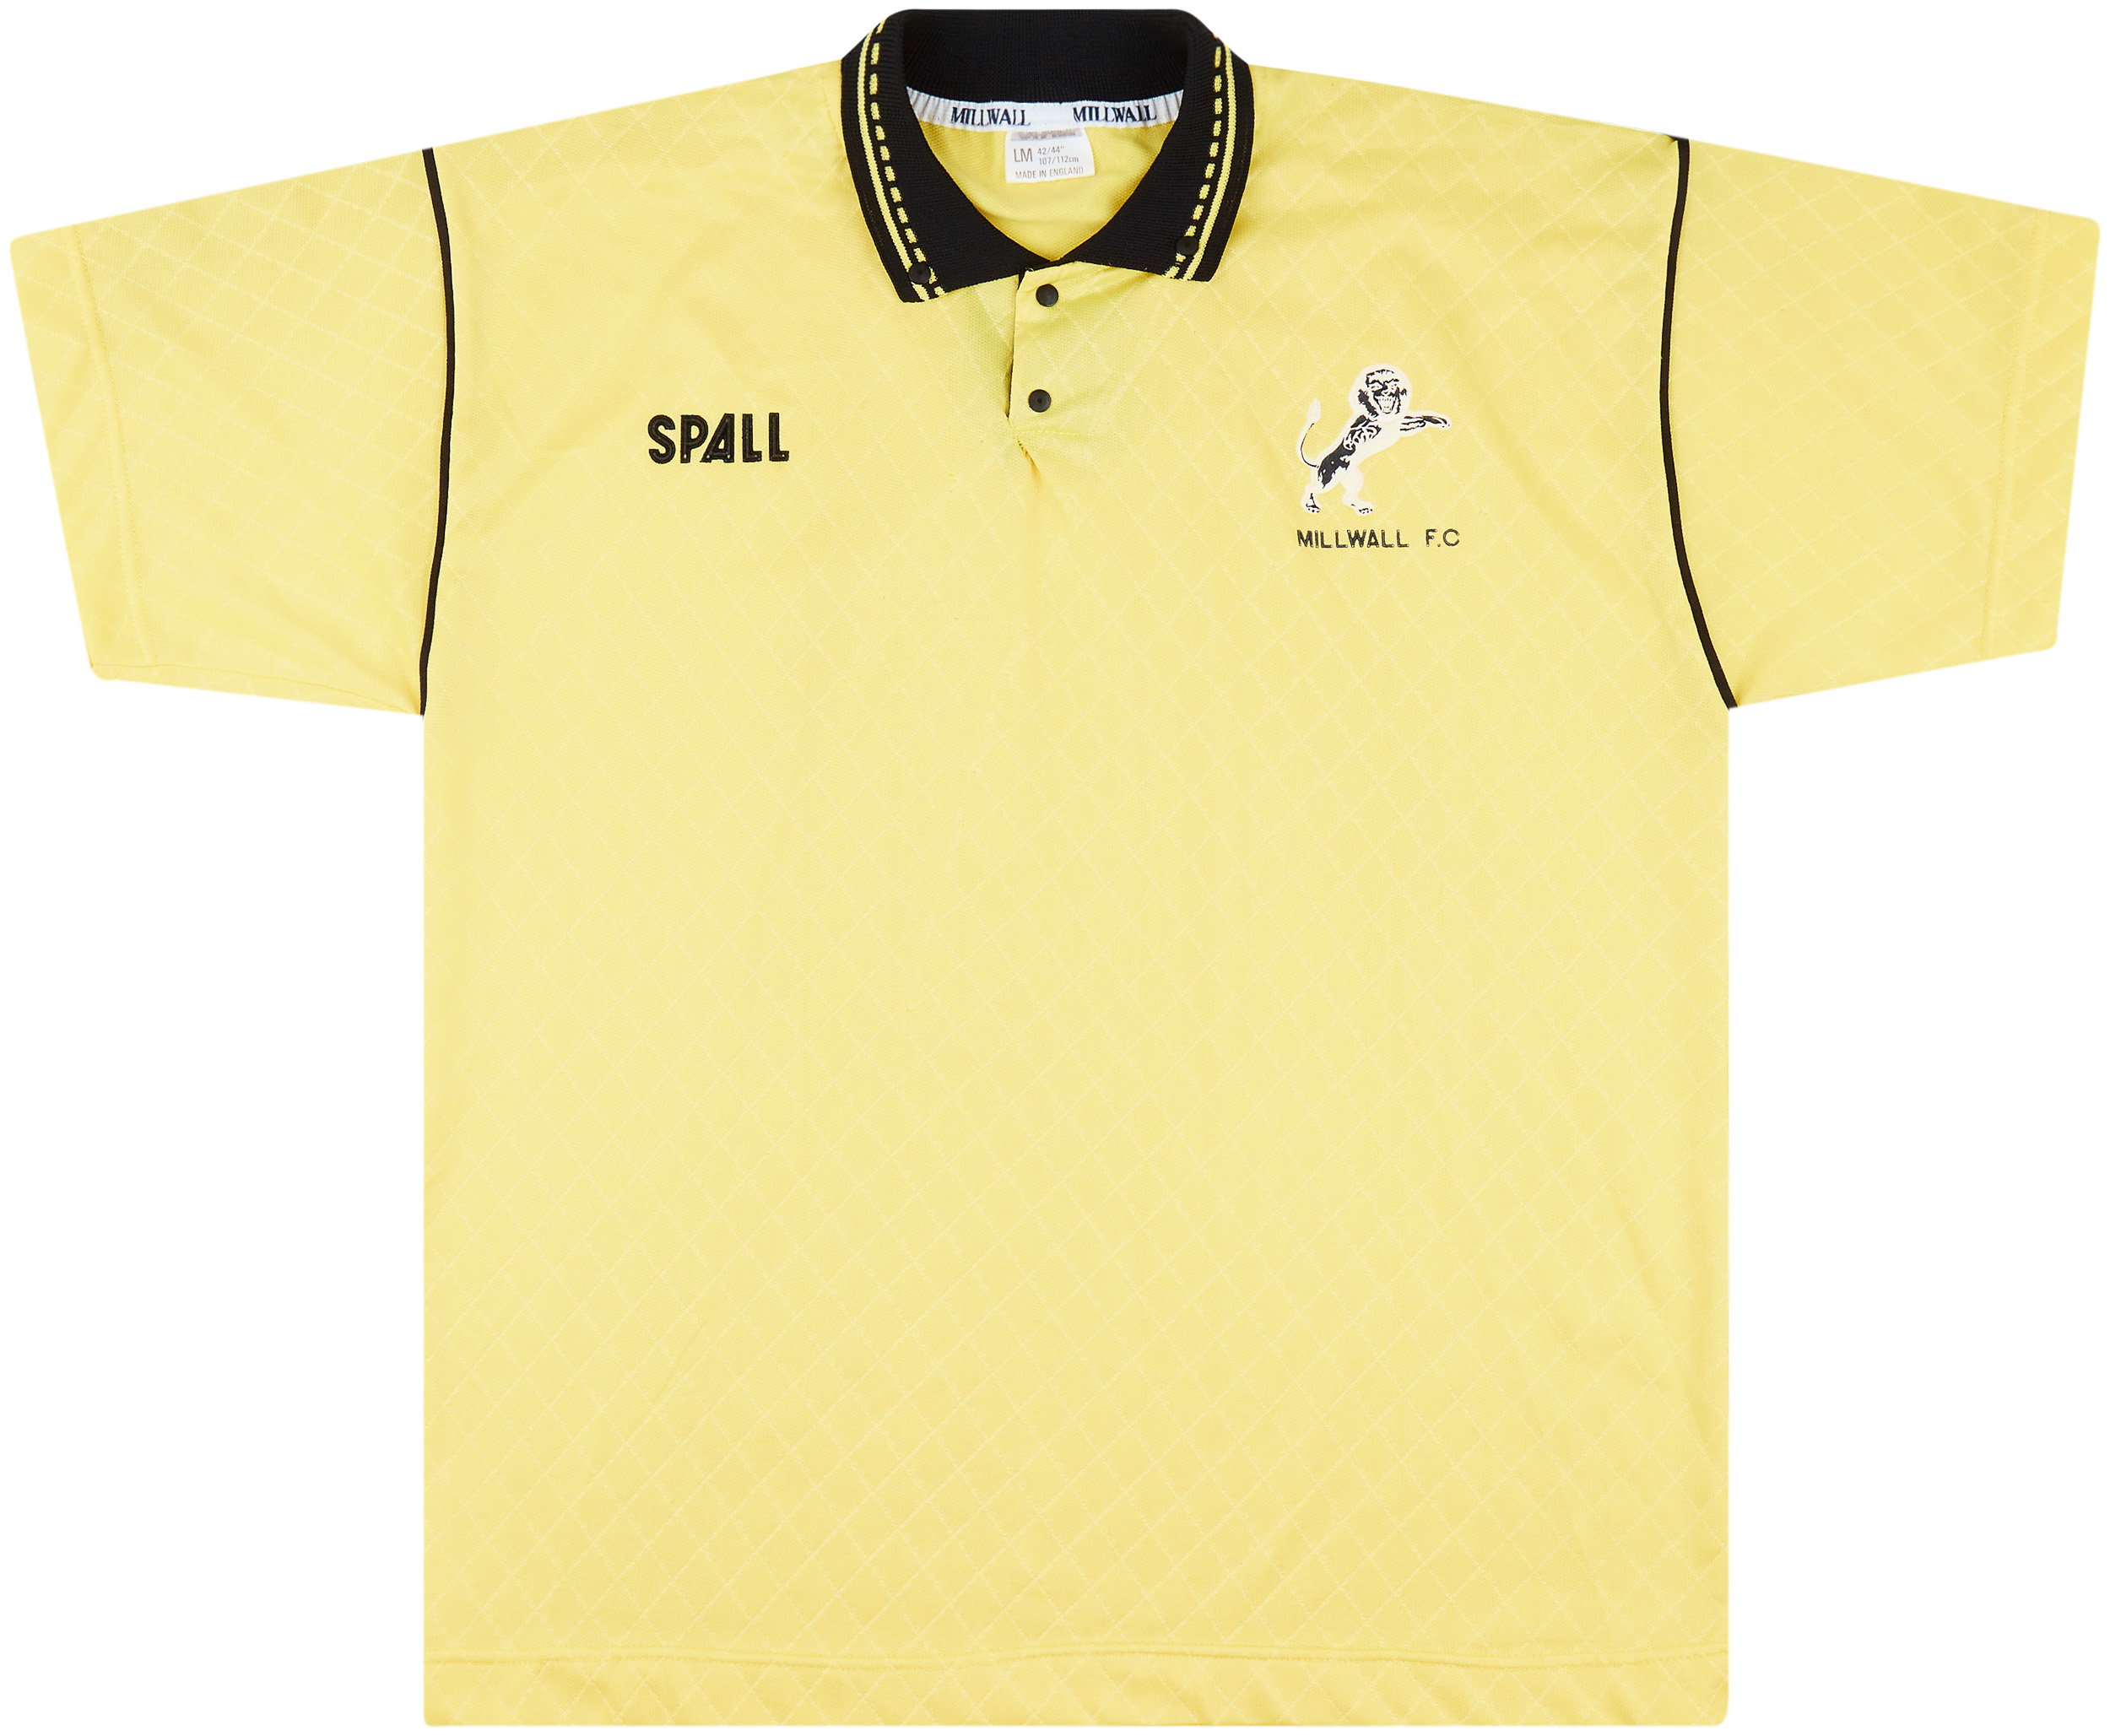 1989-90 Millwall Away Shirt - 6/10 - ()